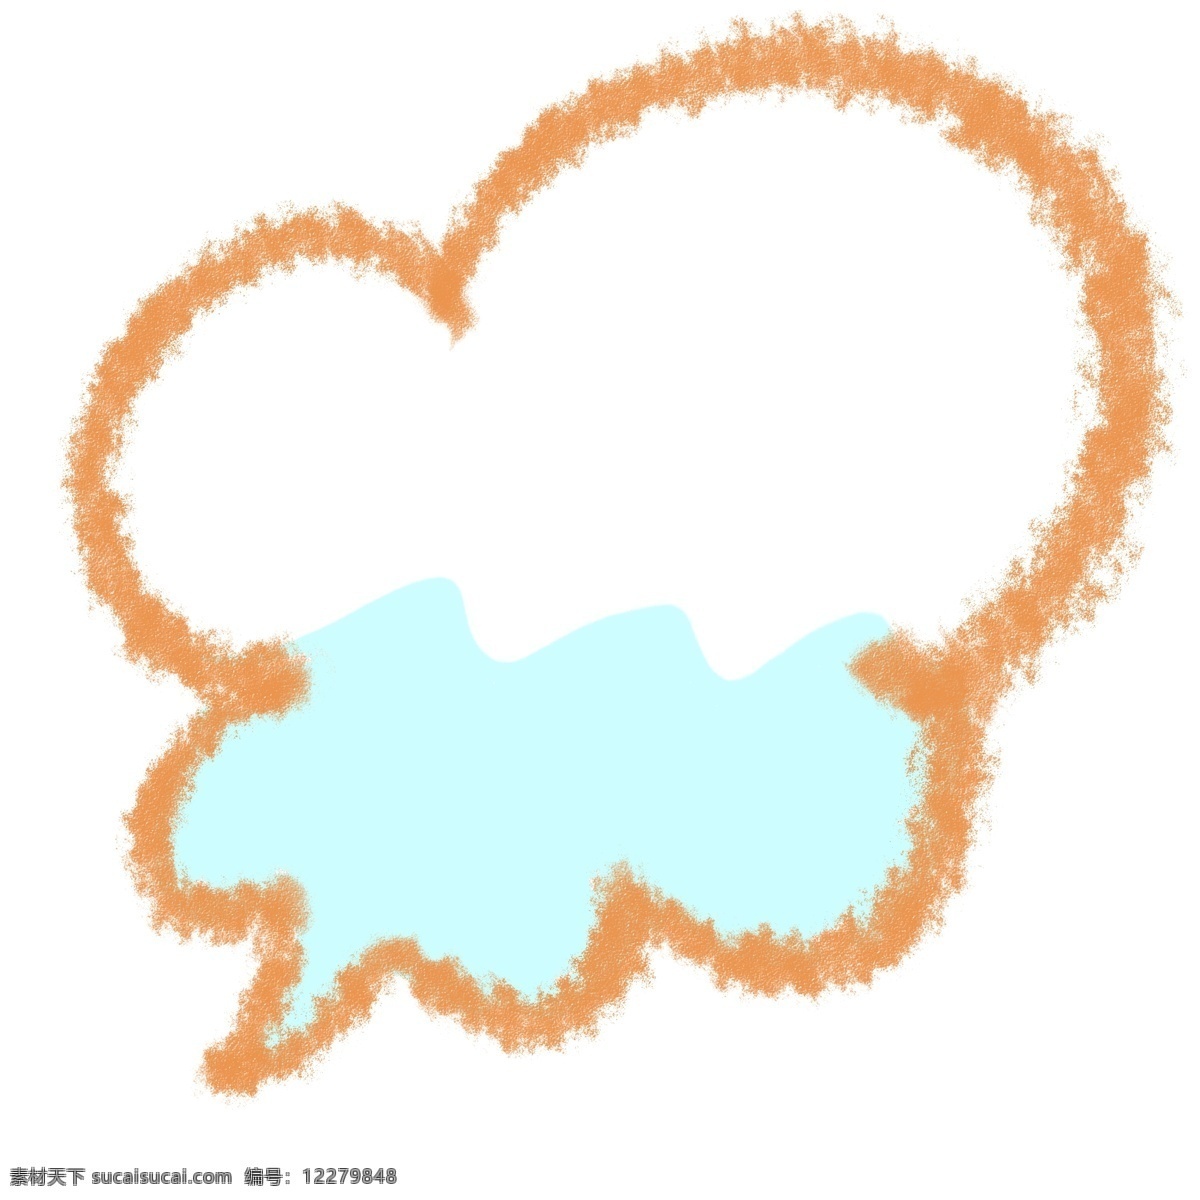 卡通 手绘 云朵 海洋 蜡笔 对话框 蜡笔对话框 创意 简约 蓝色 粉色 形状 边框 纯色 框 大气